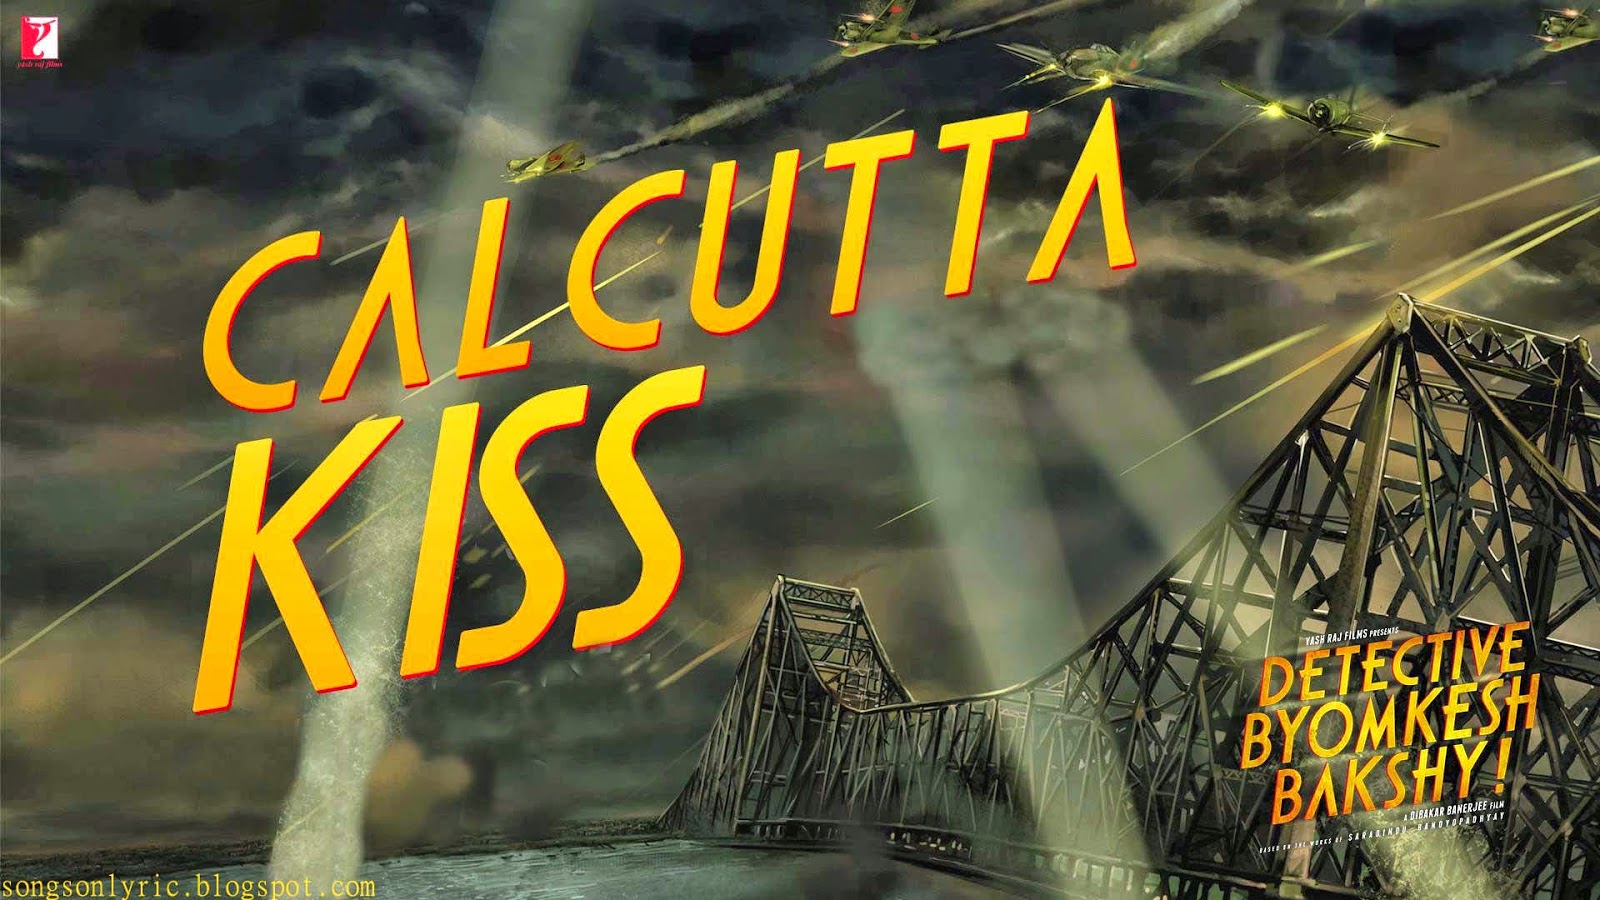 'Calcutta Kiss'